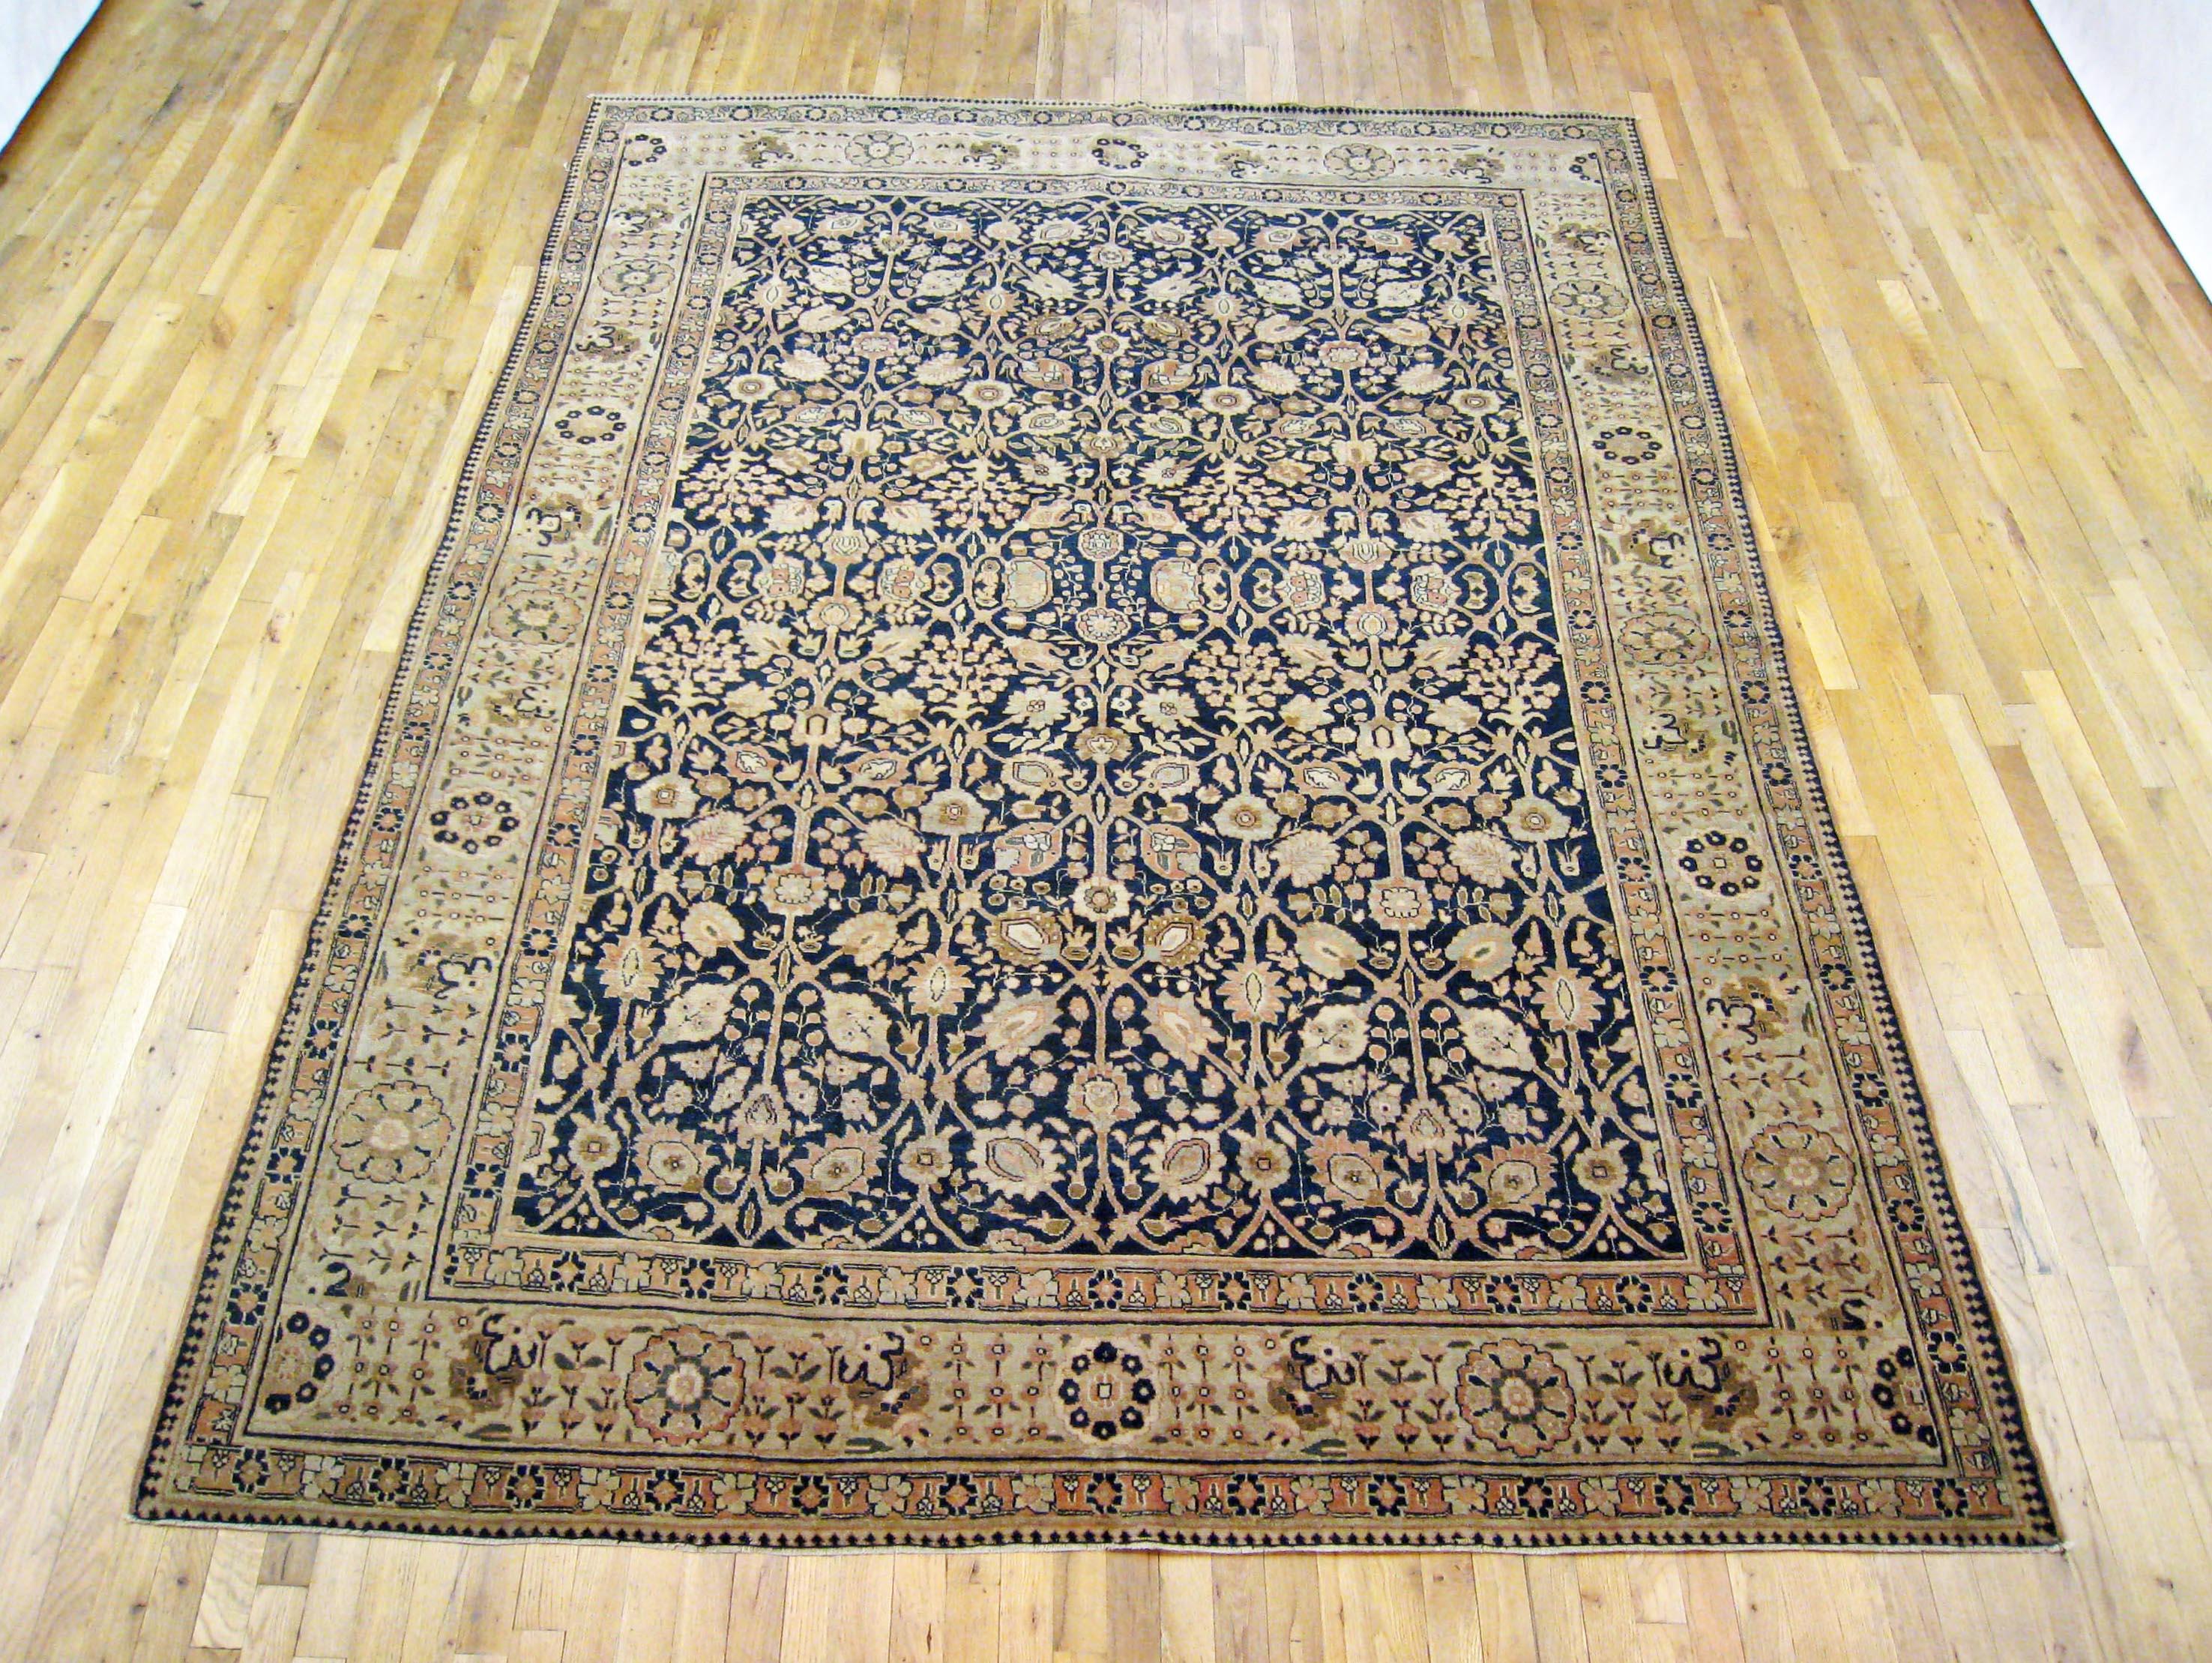 Antique Persian Tabriz Oriental carpet, circa 1900, Room Sized

An antique Persian Tabriz oriental carpet, circa 1900. Size: 10'9